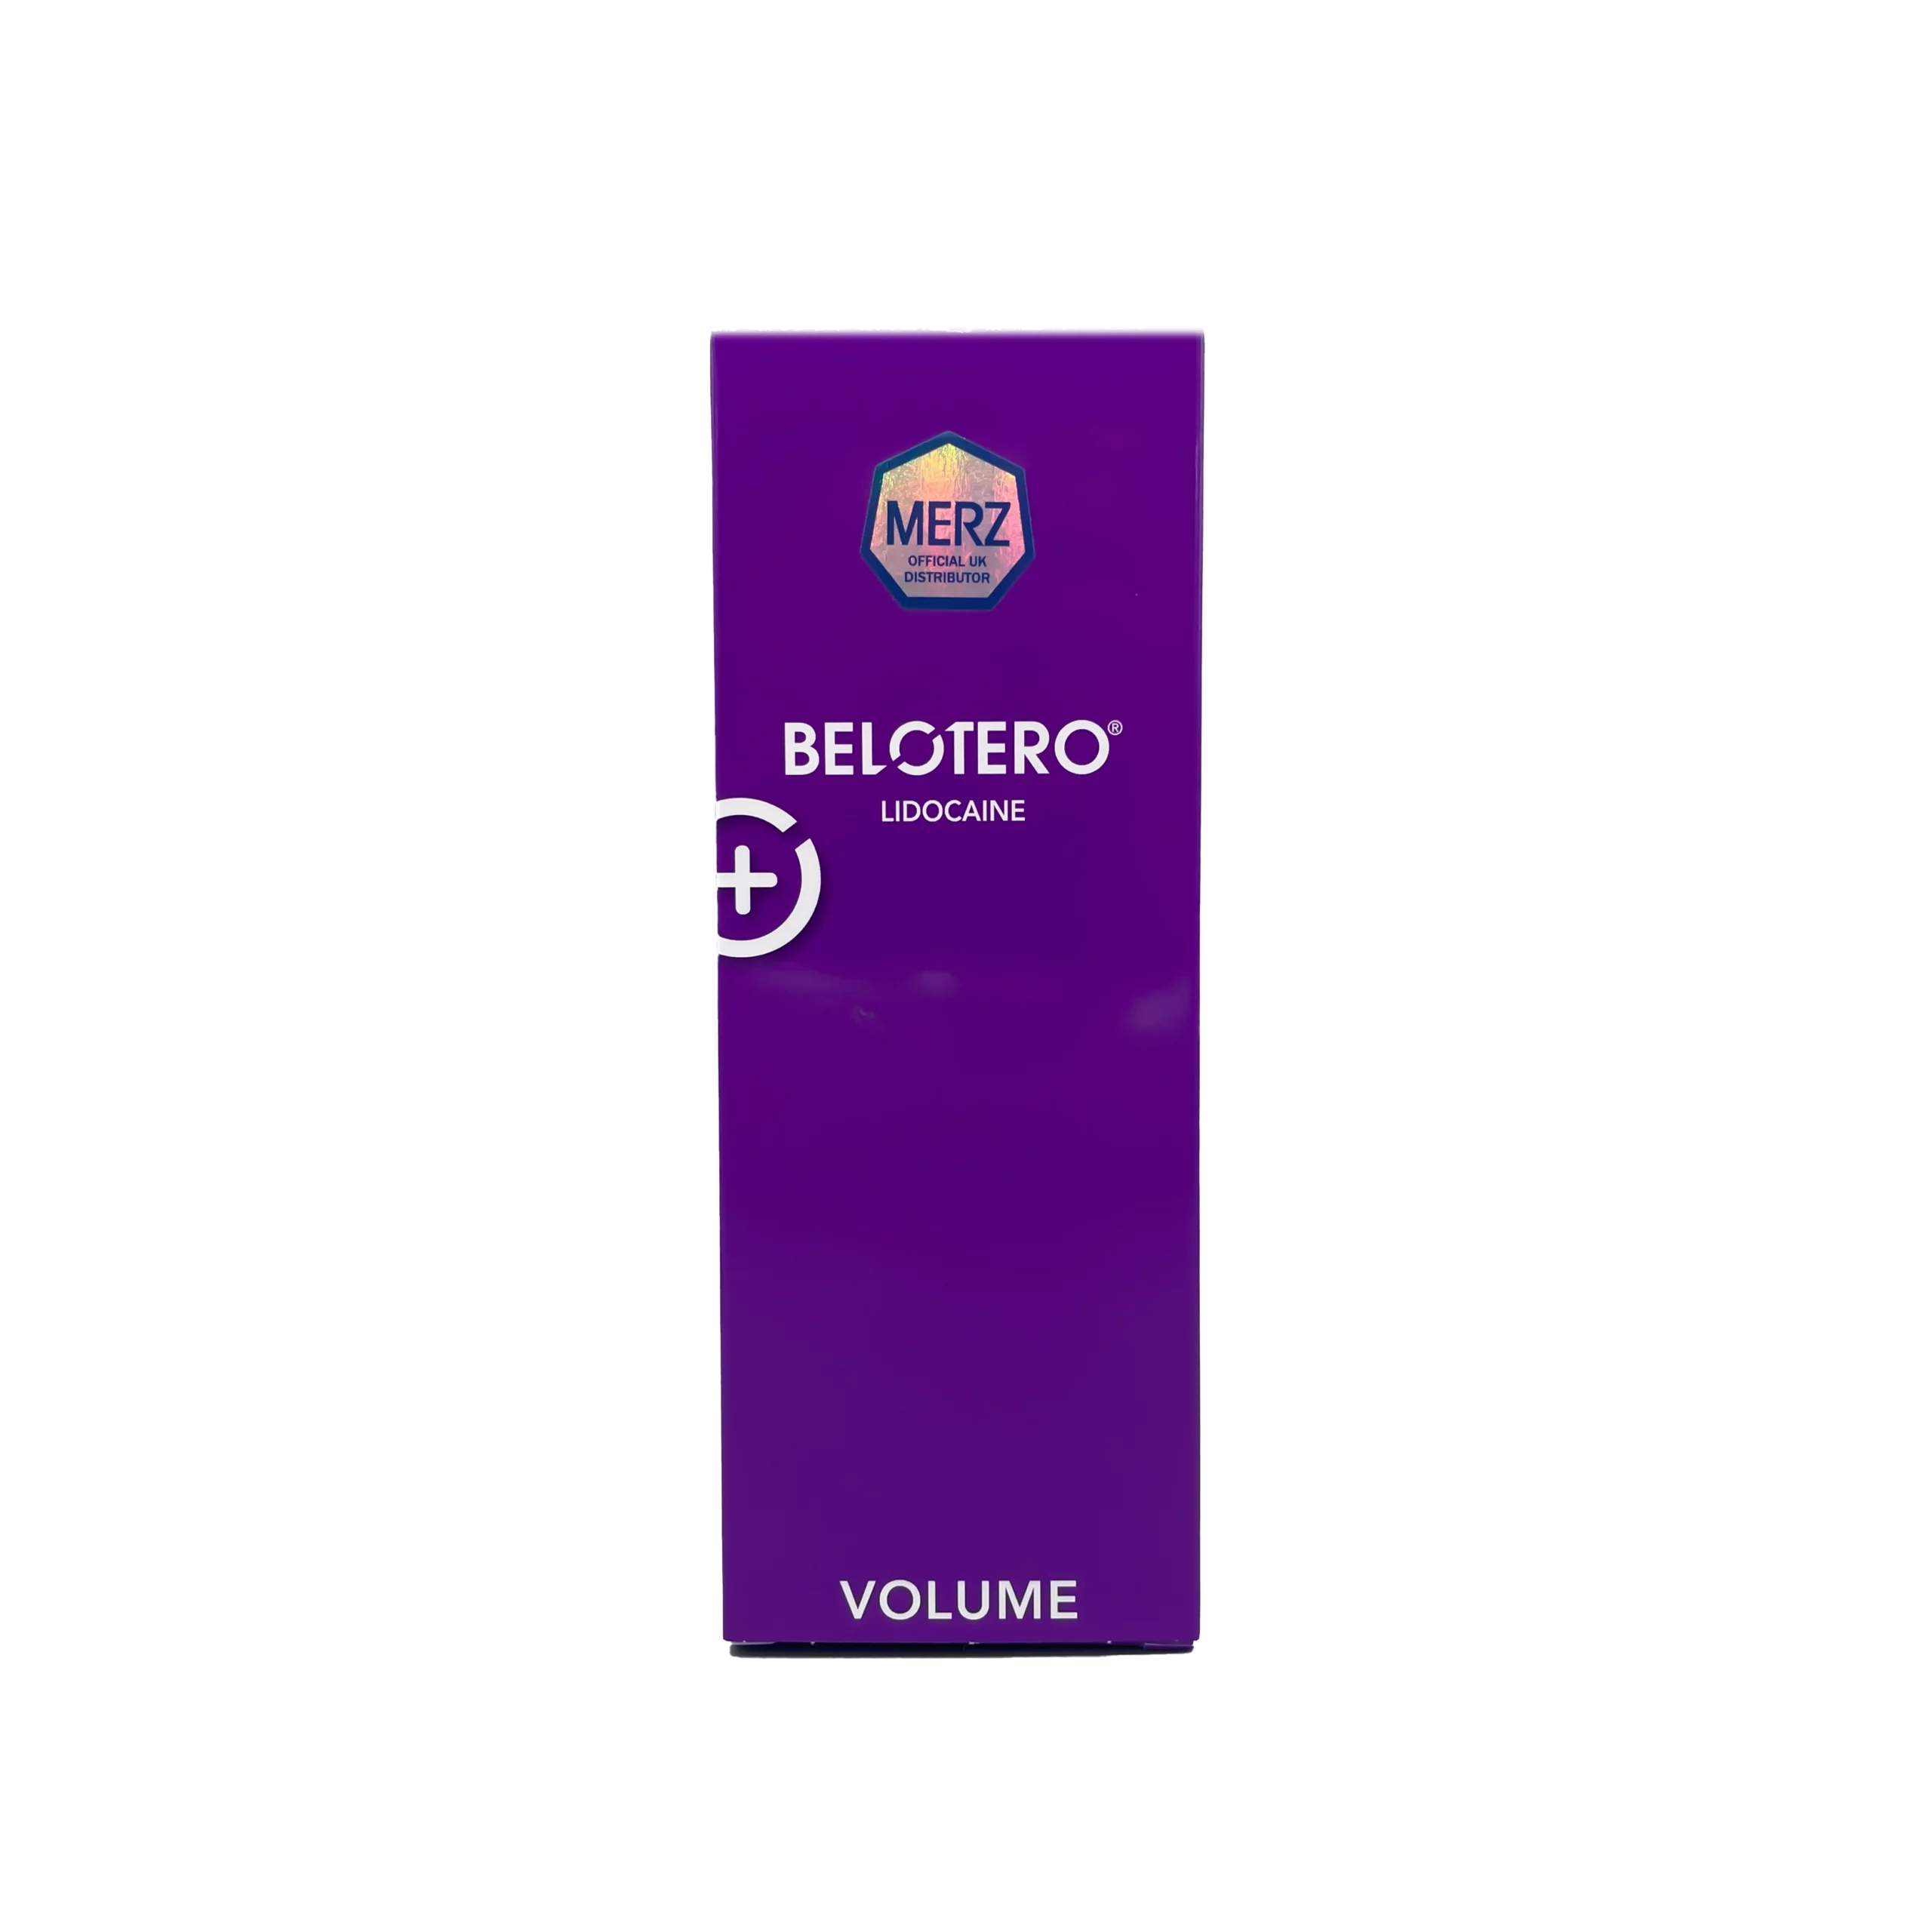 Belotero® Volume Lidocaine